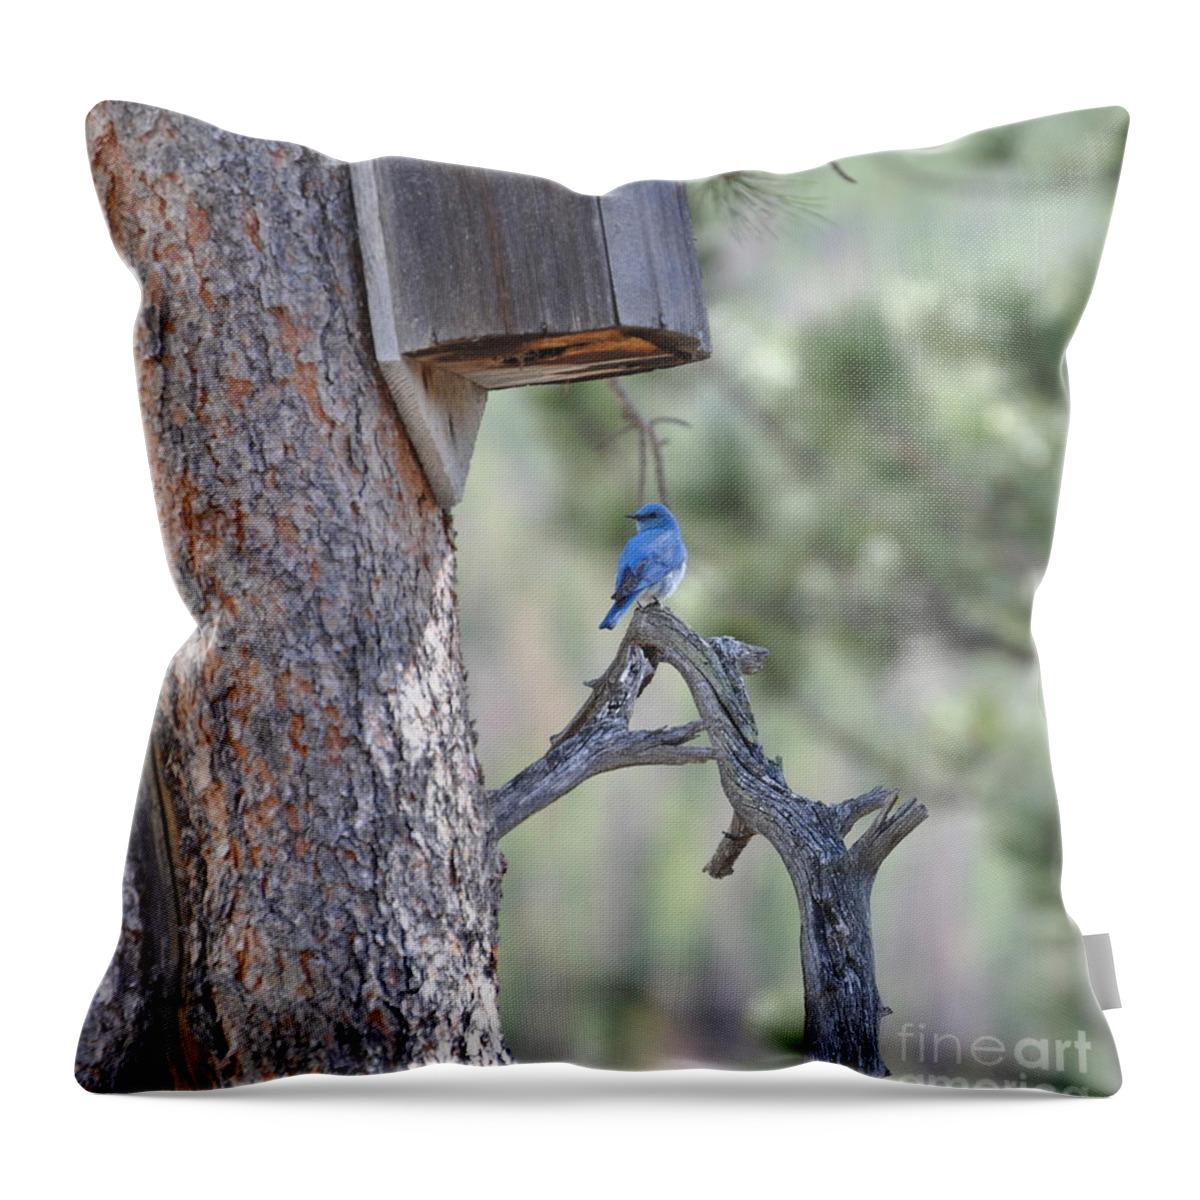 Bird Throw Pillow featuring the photograph Boy Blue by Dorrene BrownButterfield